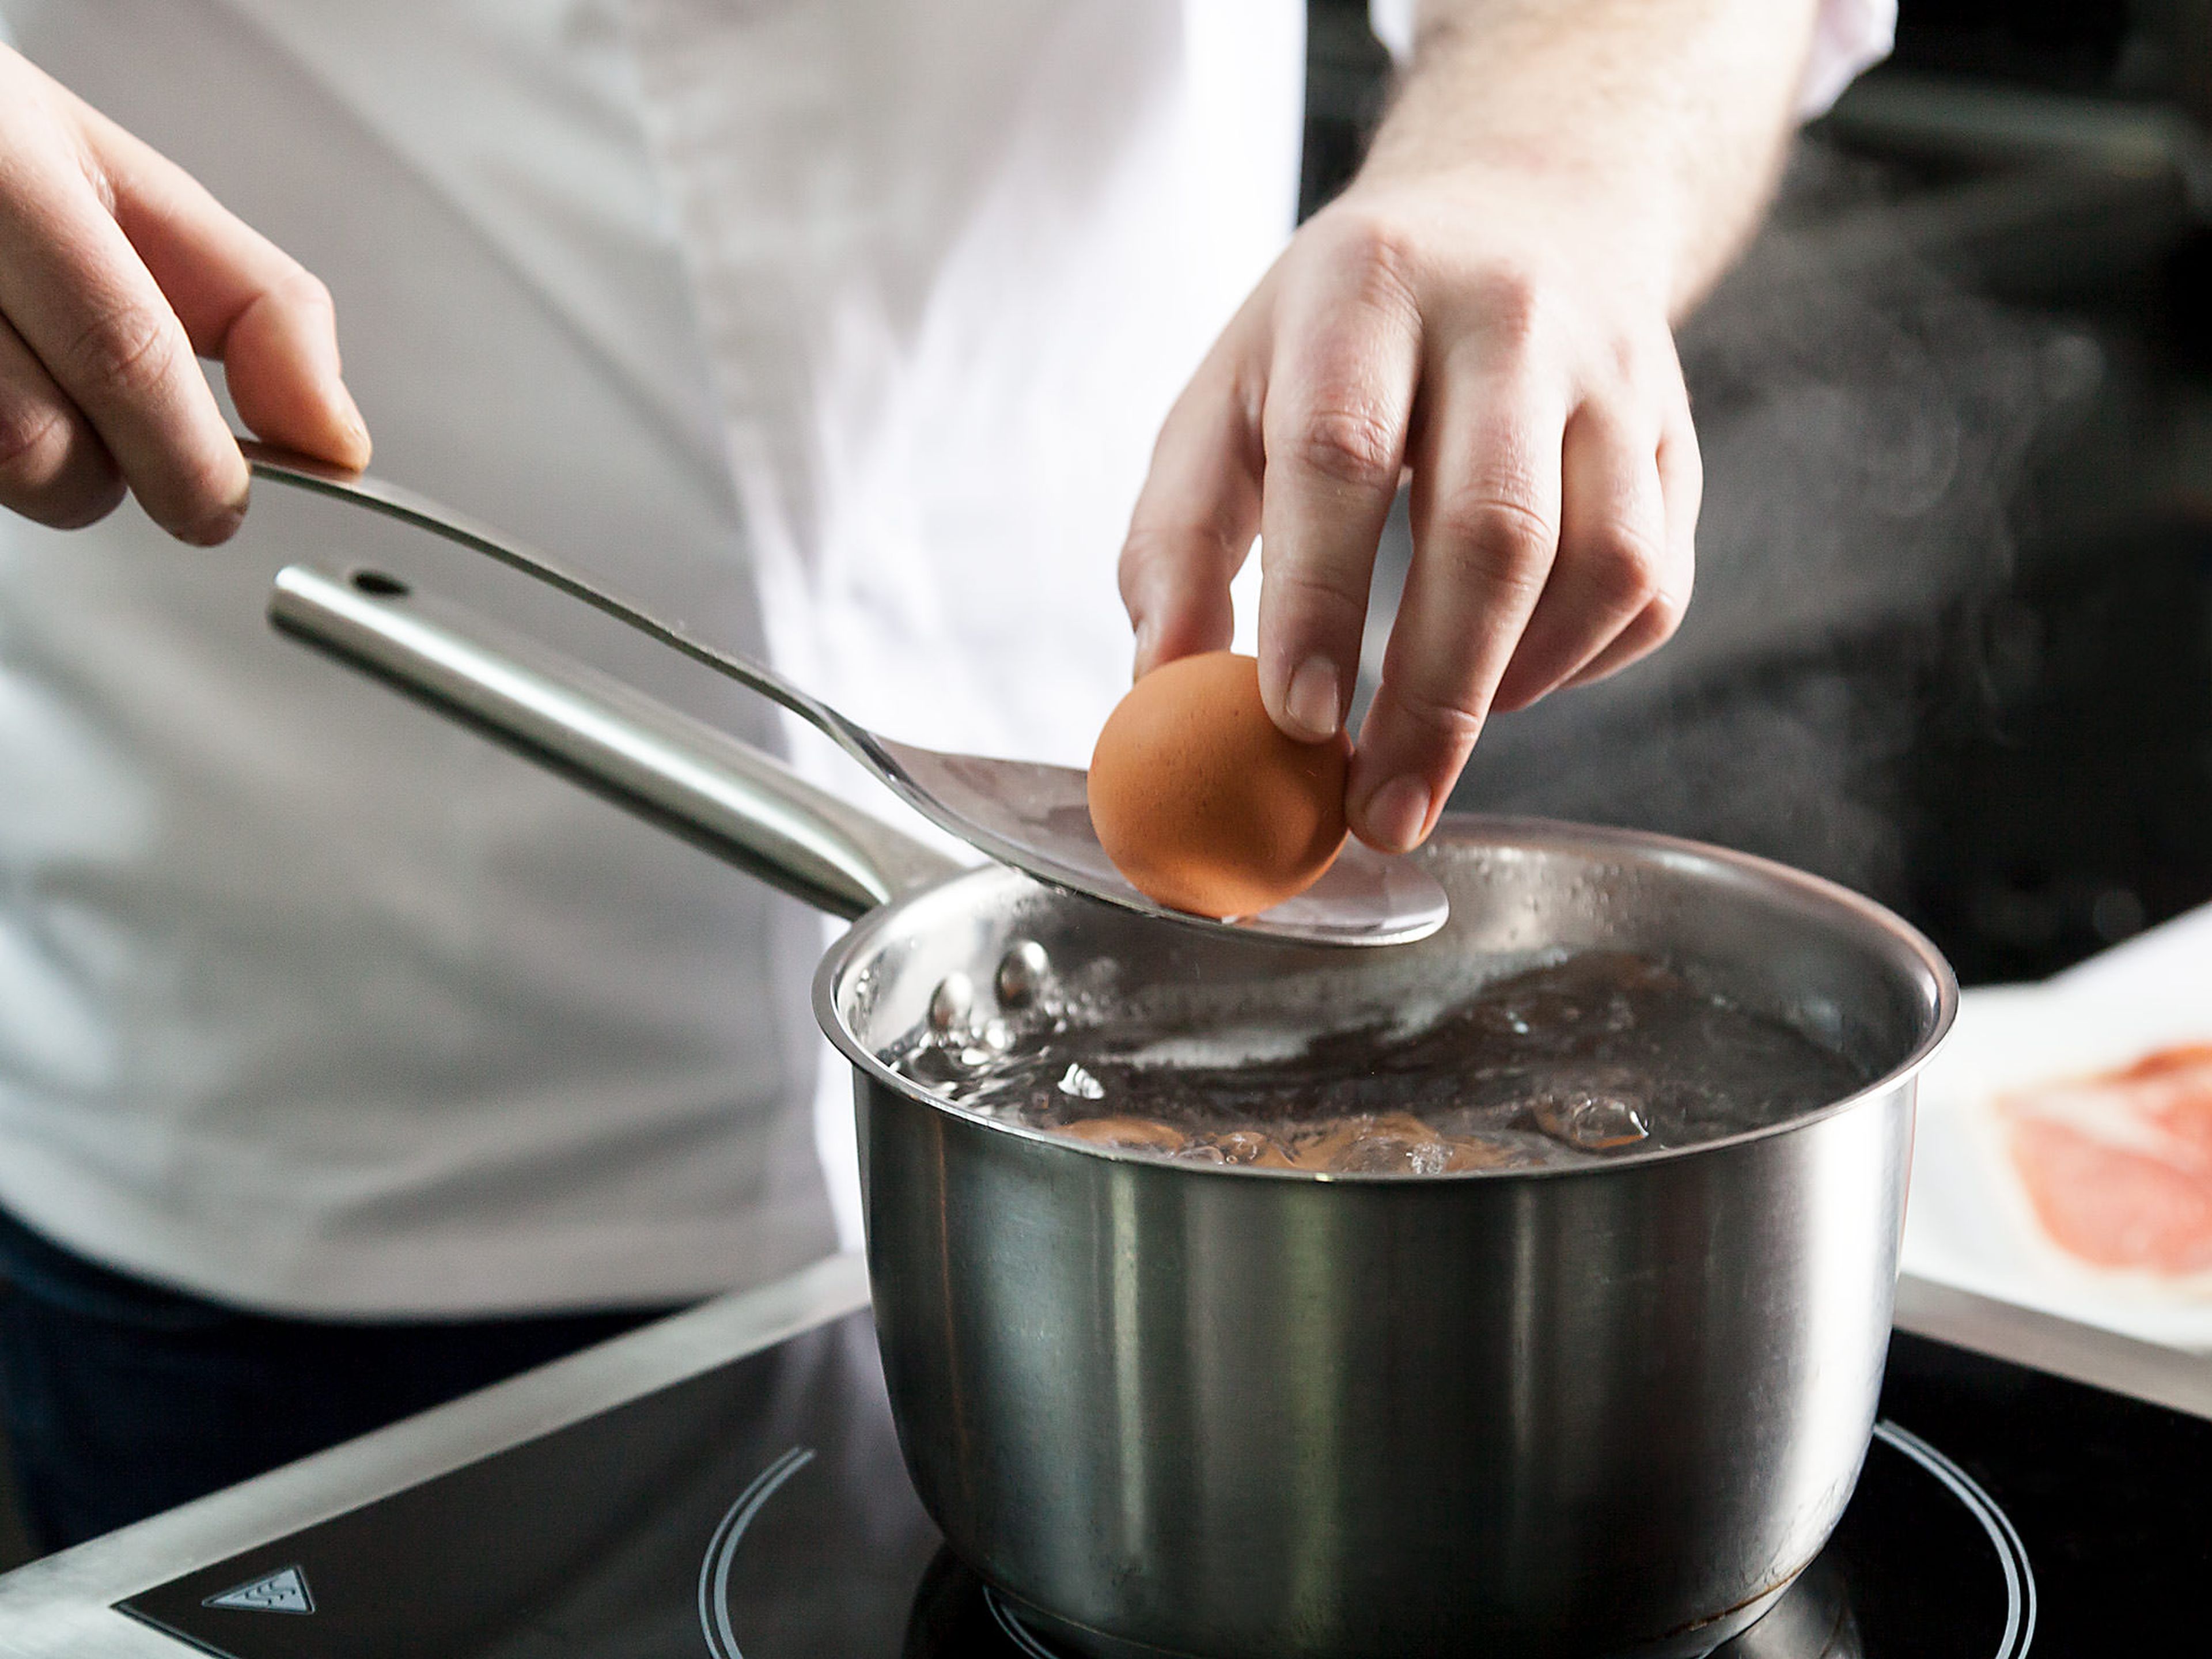 Backofen auf 180°C vorheizen. Einen Teil der Eier in einen Stieltopf mit Salzwasser geben und ca. 8 Min. hart kochen.